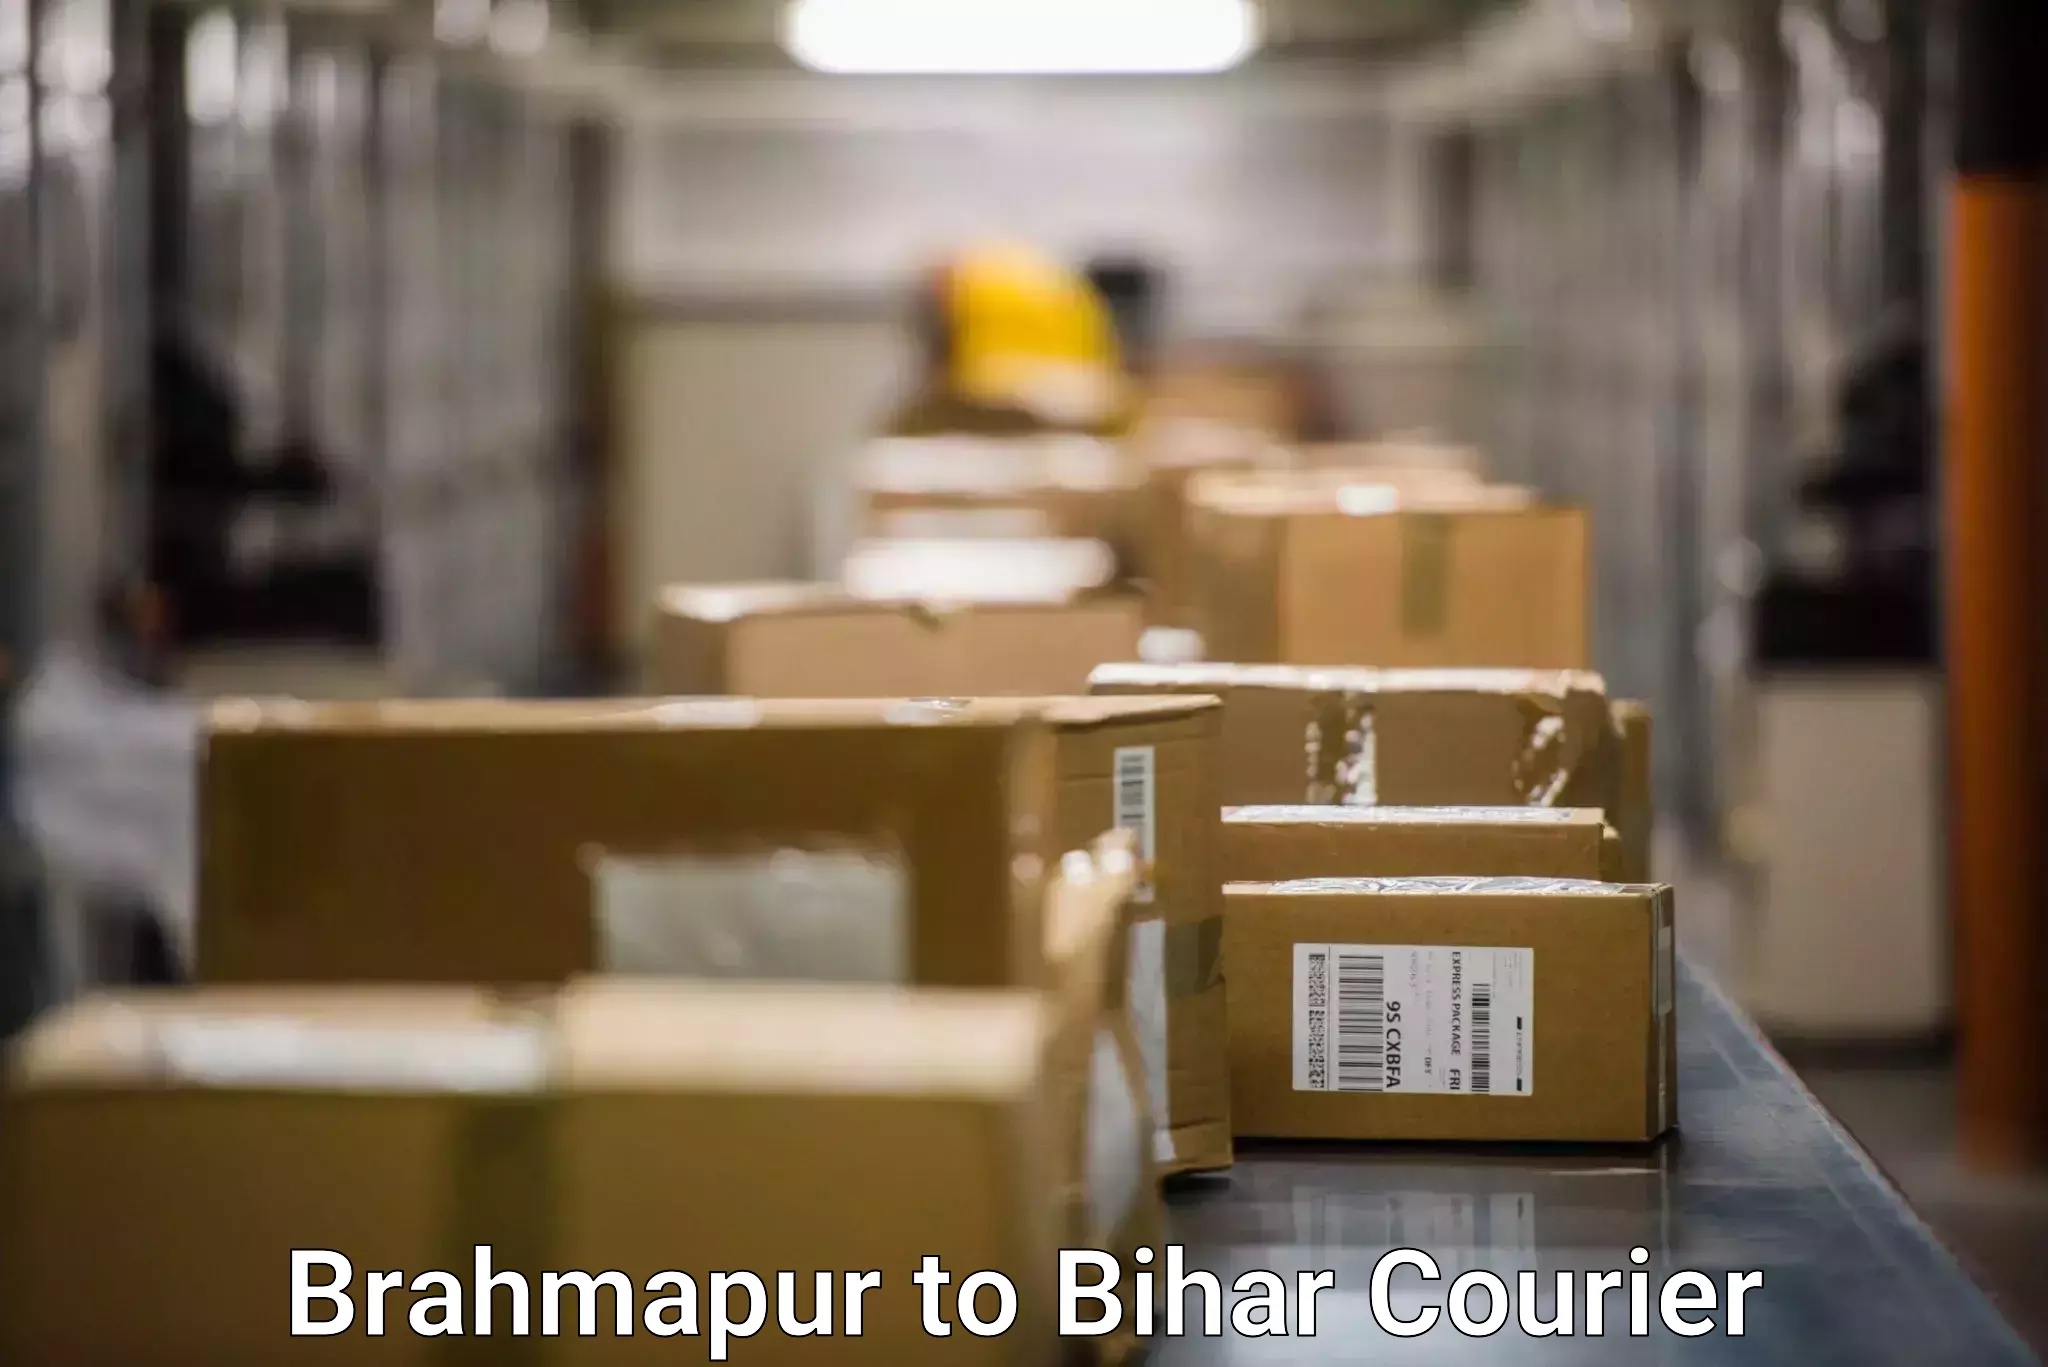 Professional parcel services Brahmapur to Bettiah